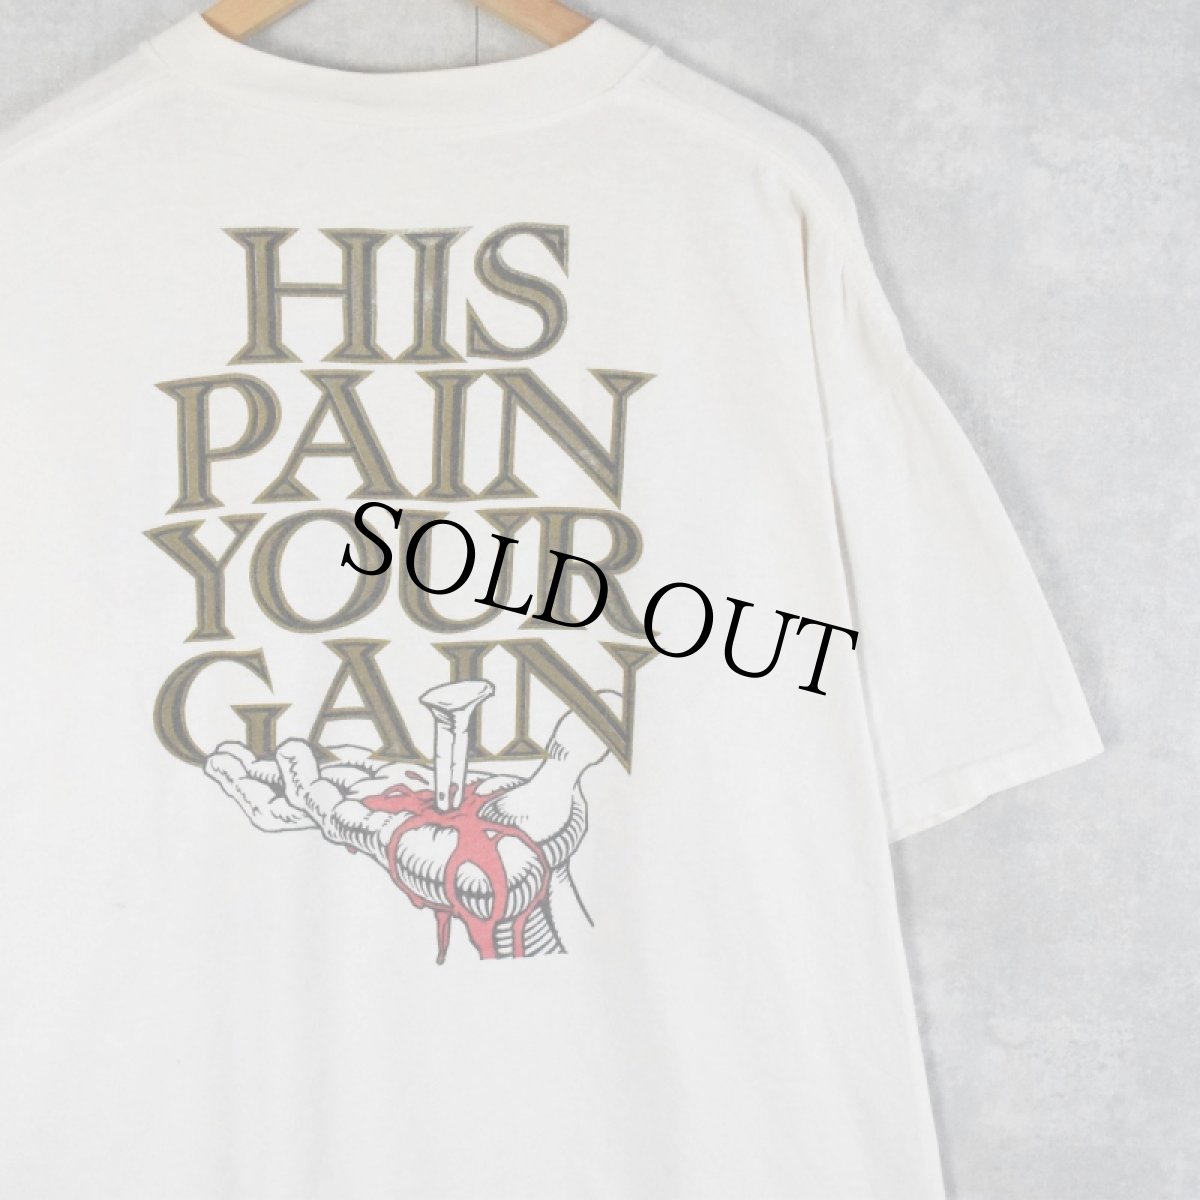 画像1: 90's LORD'S GYM "HIS PAIN YOUR GAIN" ジーザスプリントTシャツ (1)